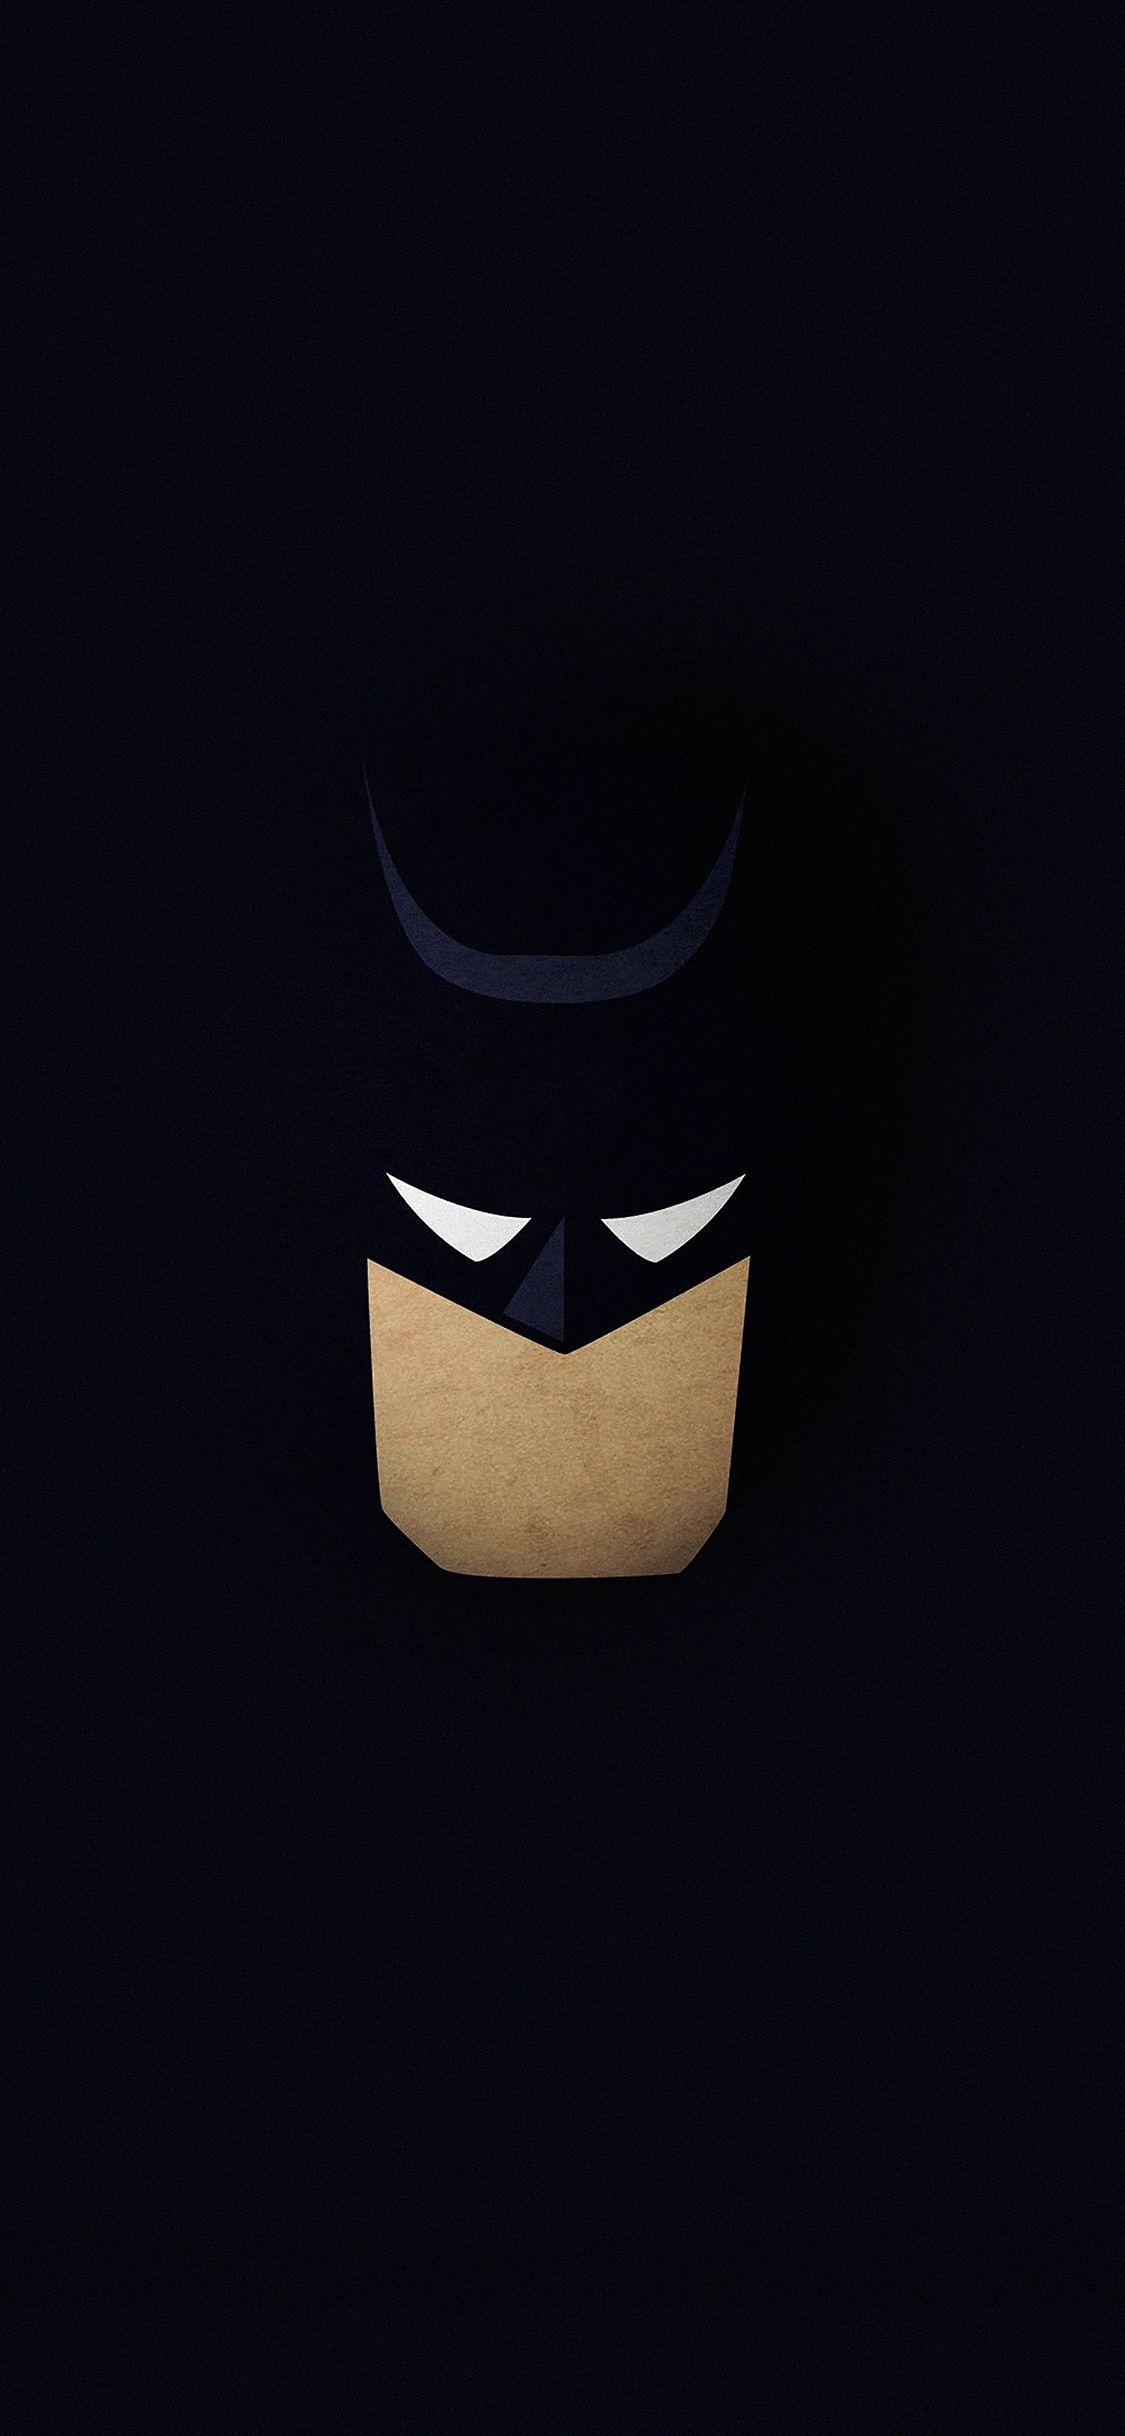 wallpaper batman face dark minimal